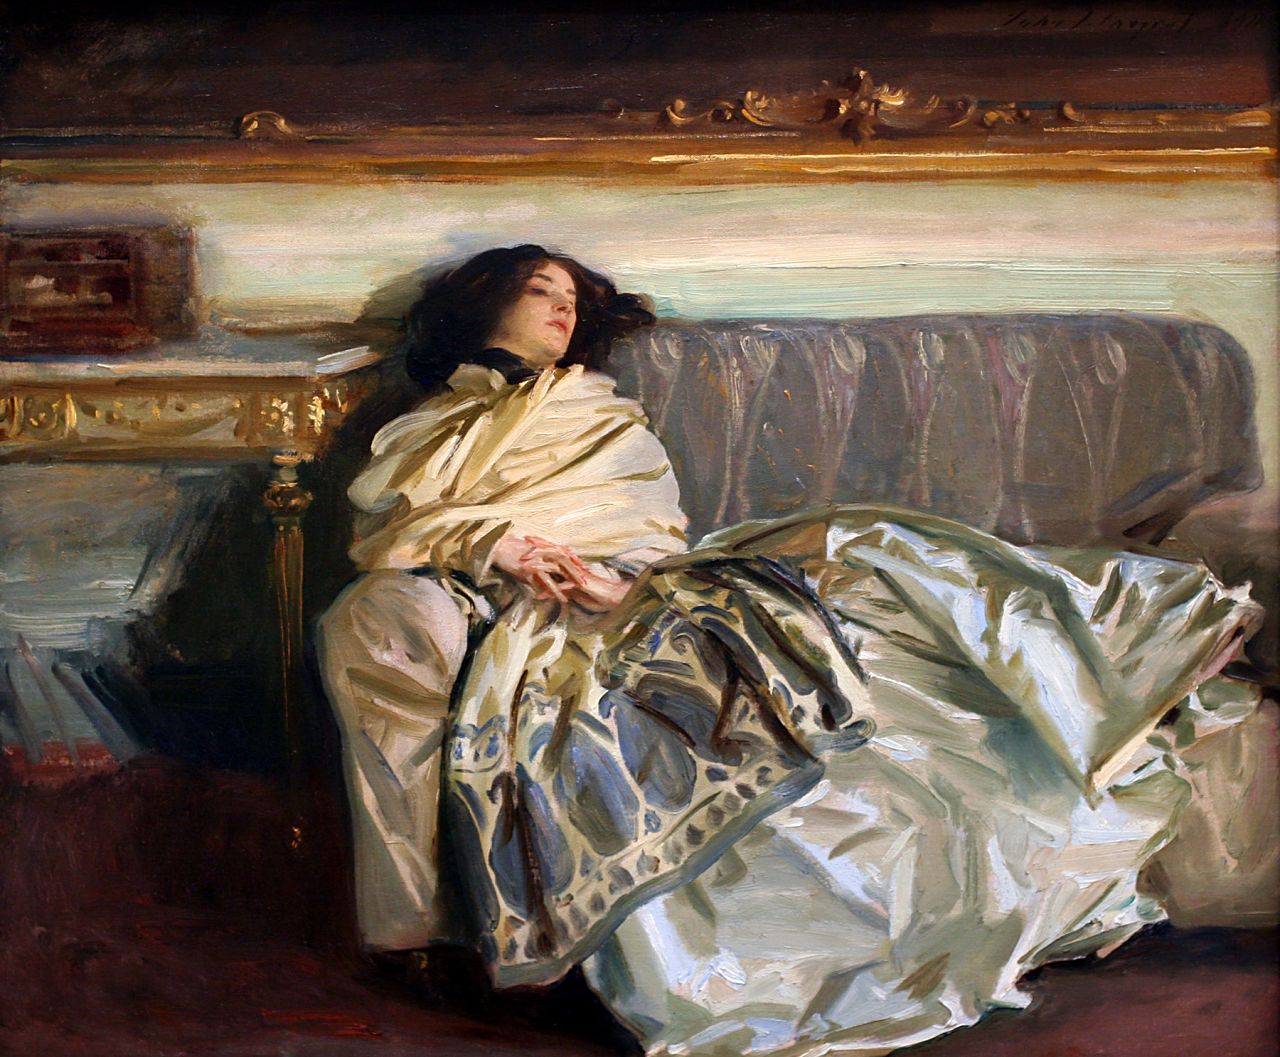 무기력 (휴식) by John Singer Sargent - 1911 - 64 x 76 cm 